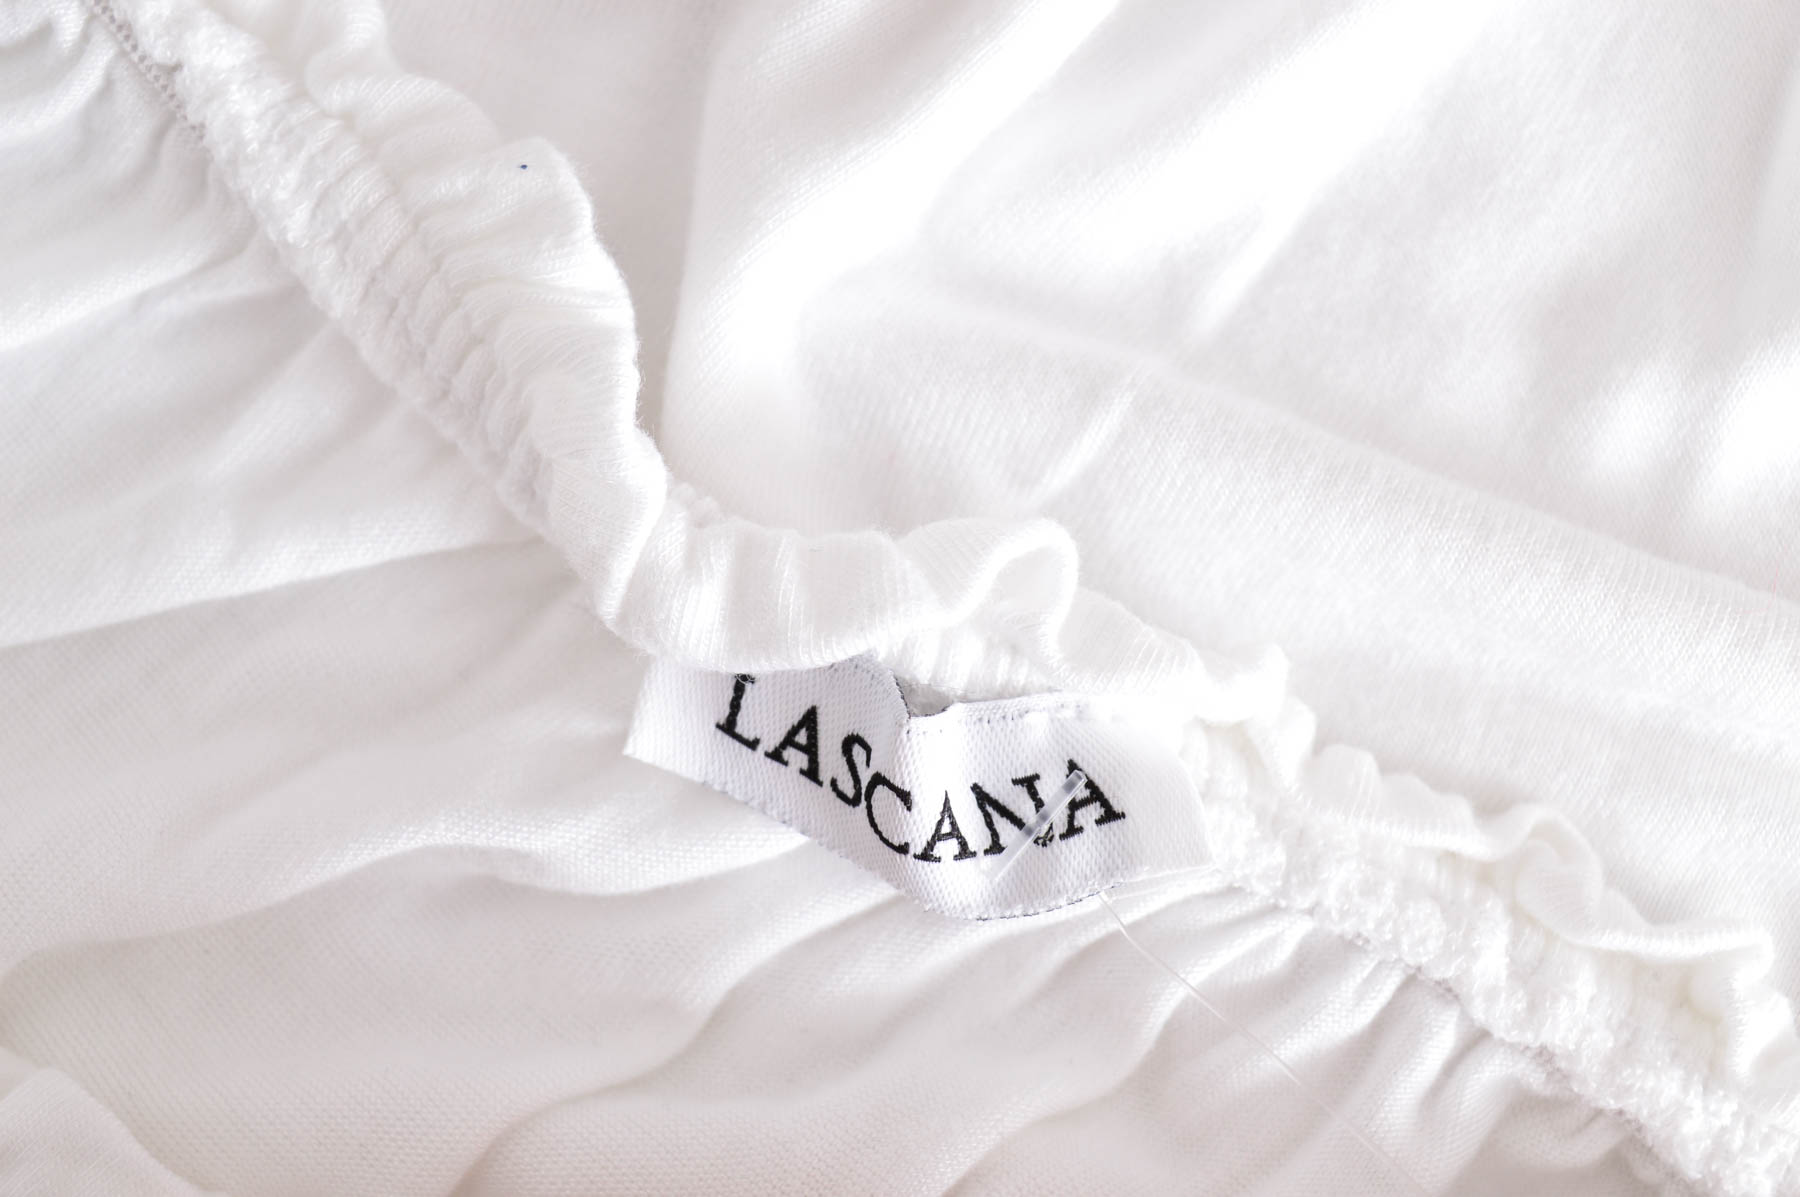 Γυναικεία μπλούζα - Lascana - 2